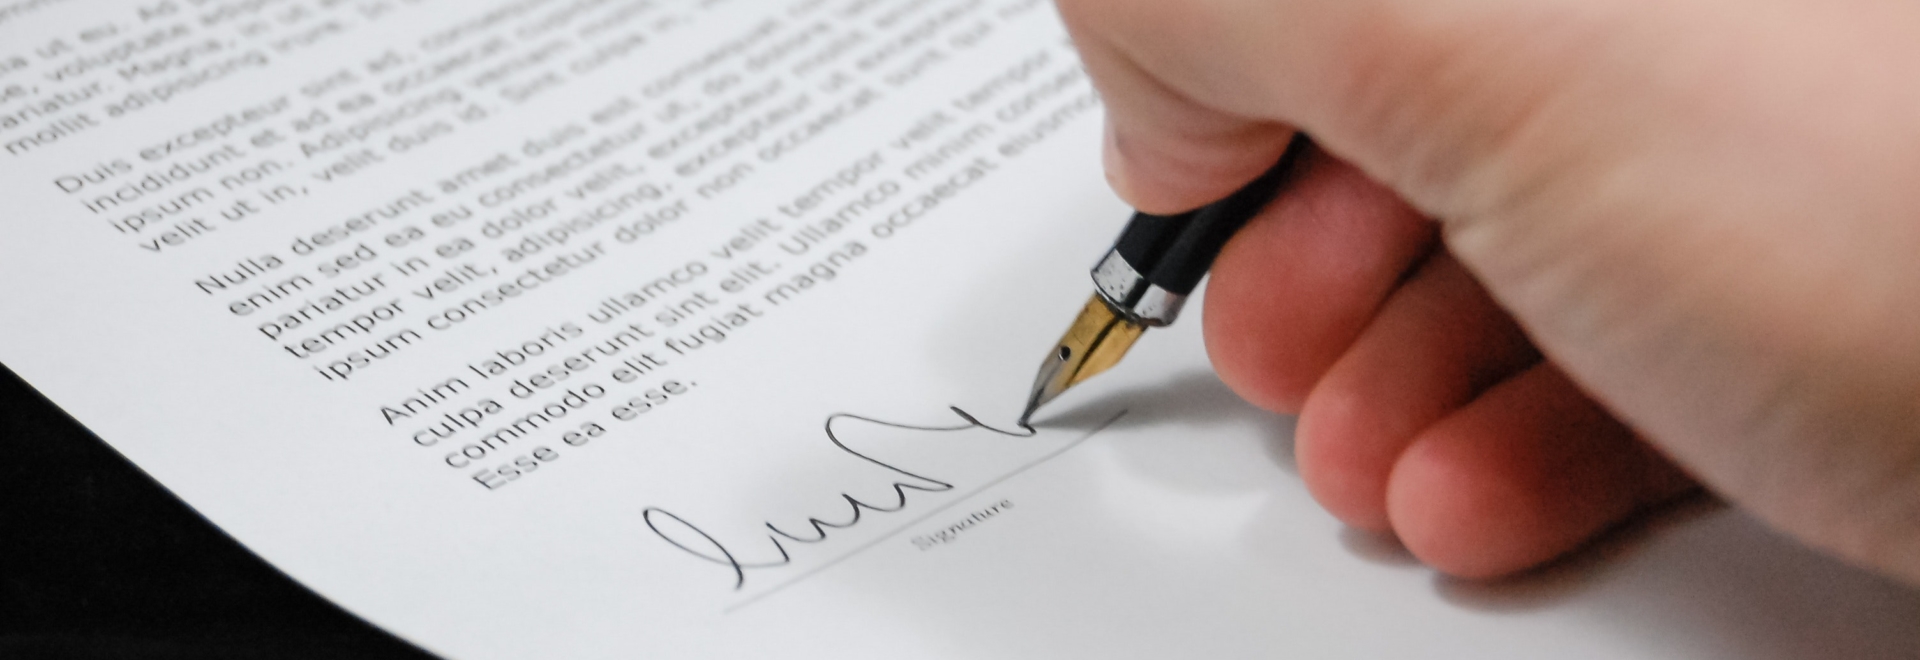 Dyrektywa Omnibus podpisanie